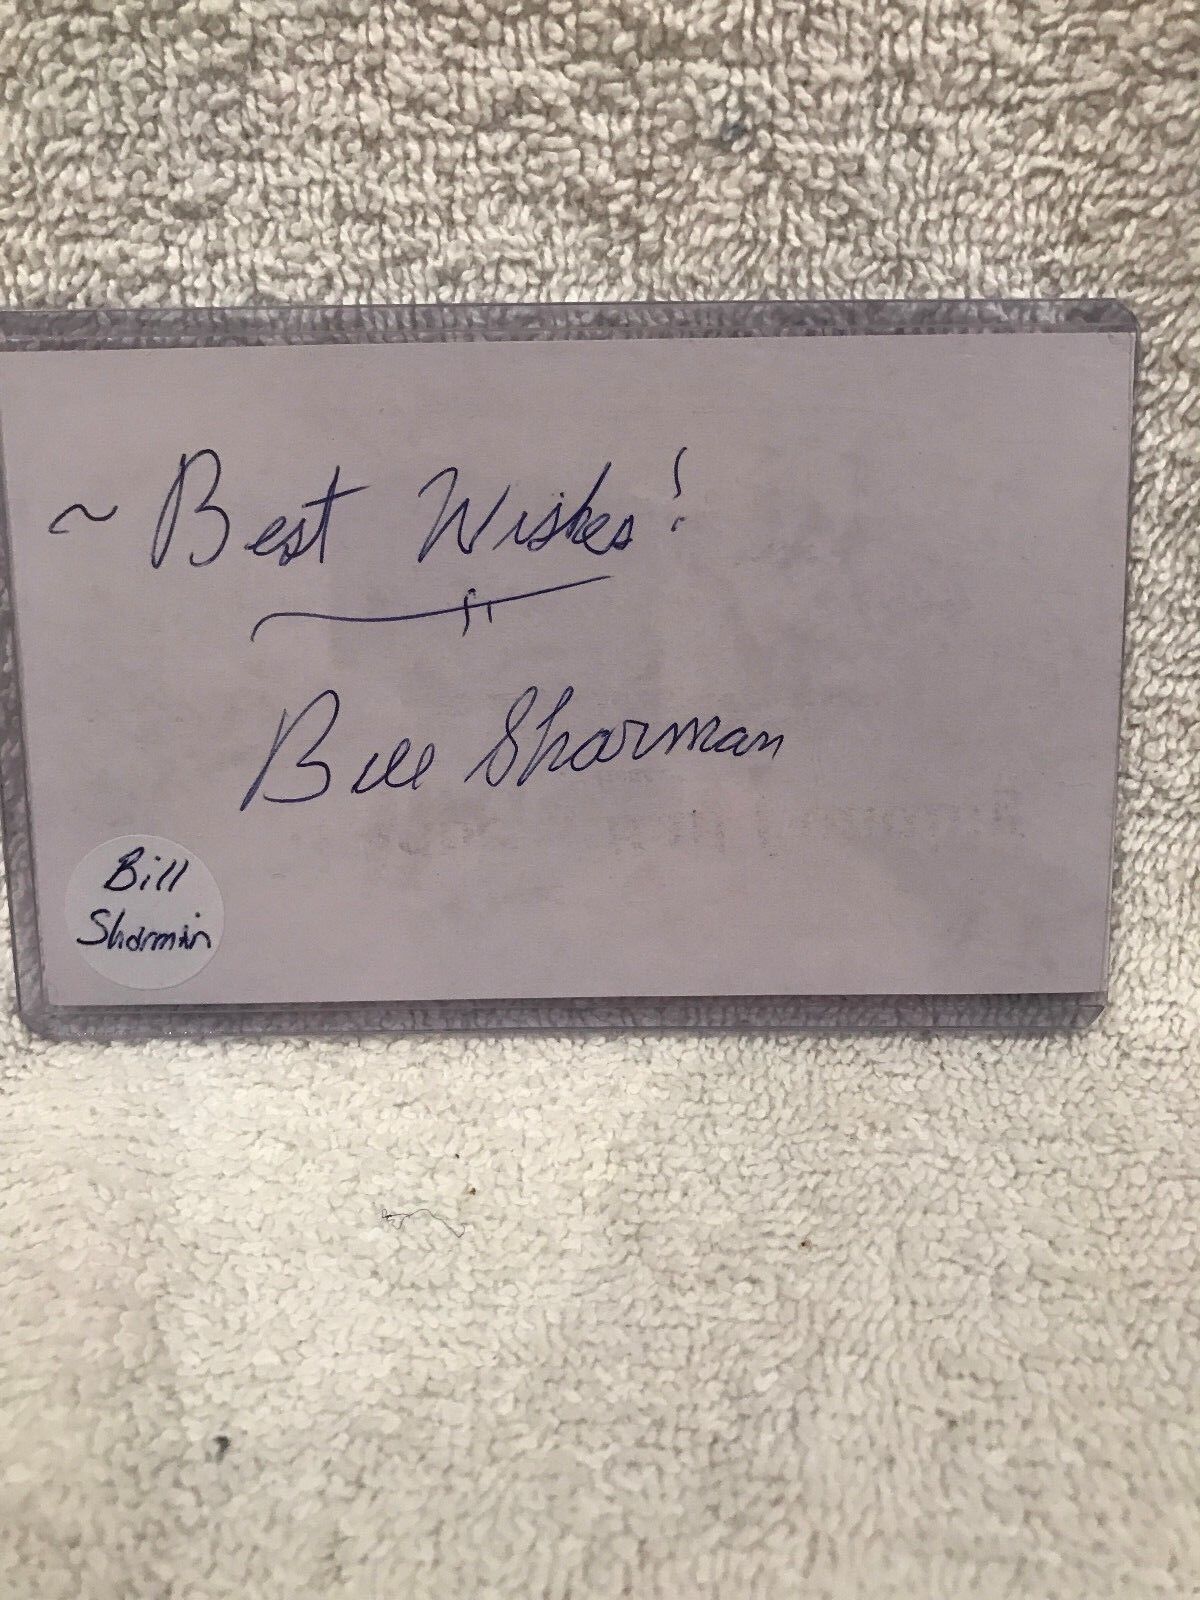 BEAUTIFUL Bill Sharman Autographed 3x5 Index Card, Boston Celtic